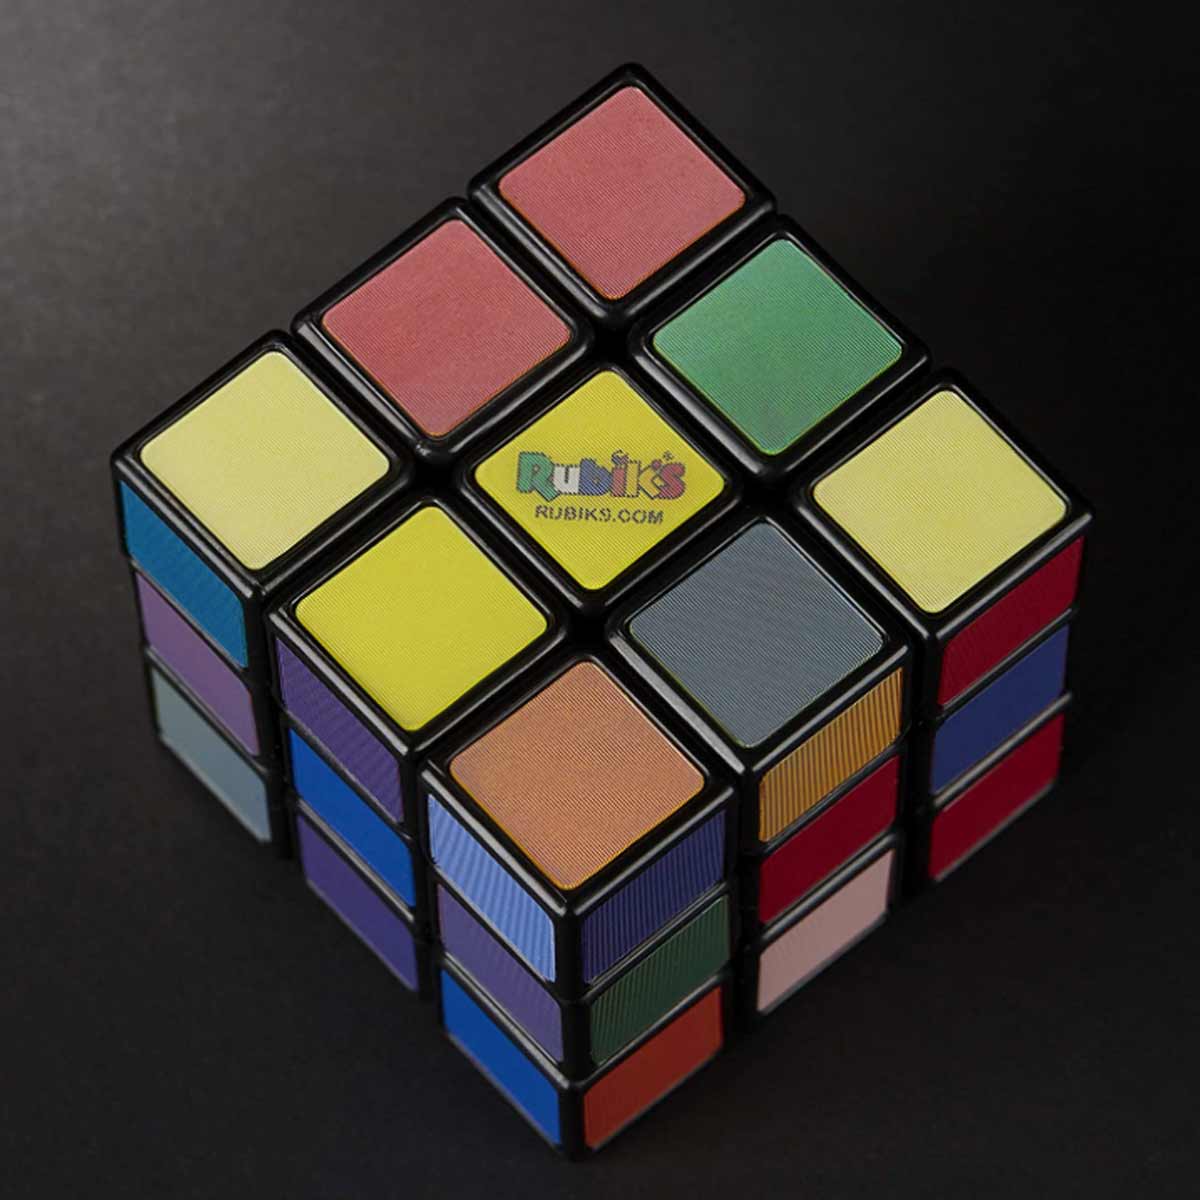 Cubo Magico Brinquedo Jogo Rubiks Impossivel Hasbro